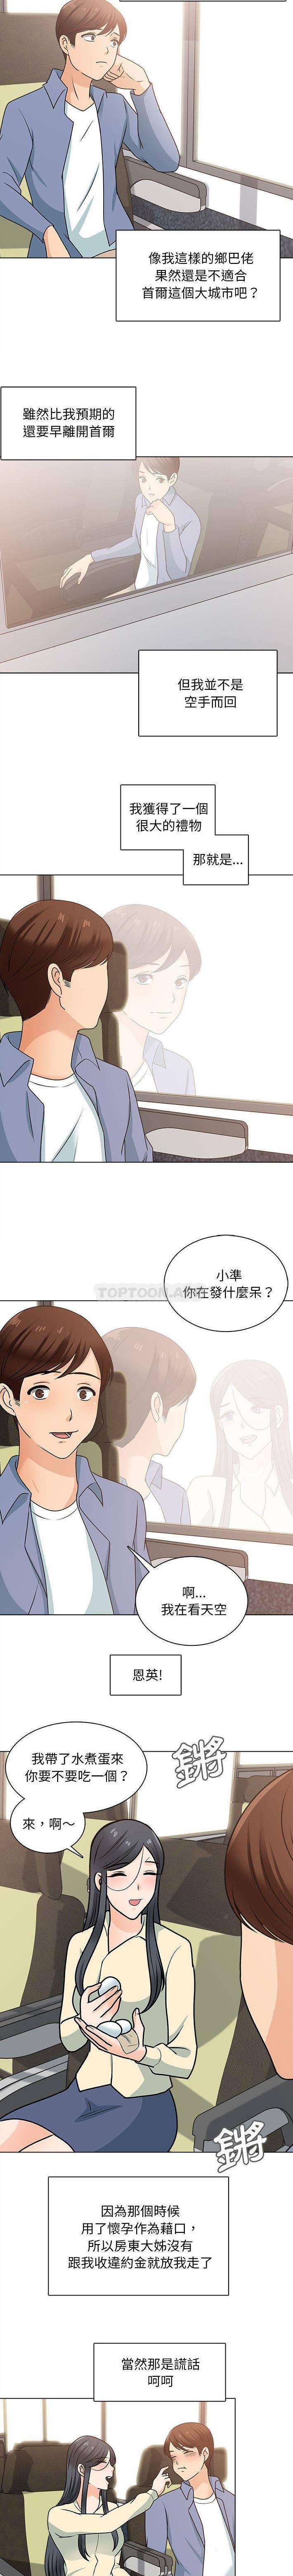 韩国污漫画 幸福公寓 第25话 7